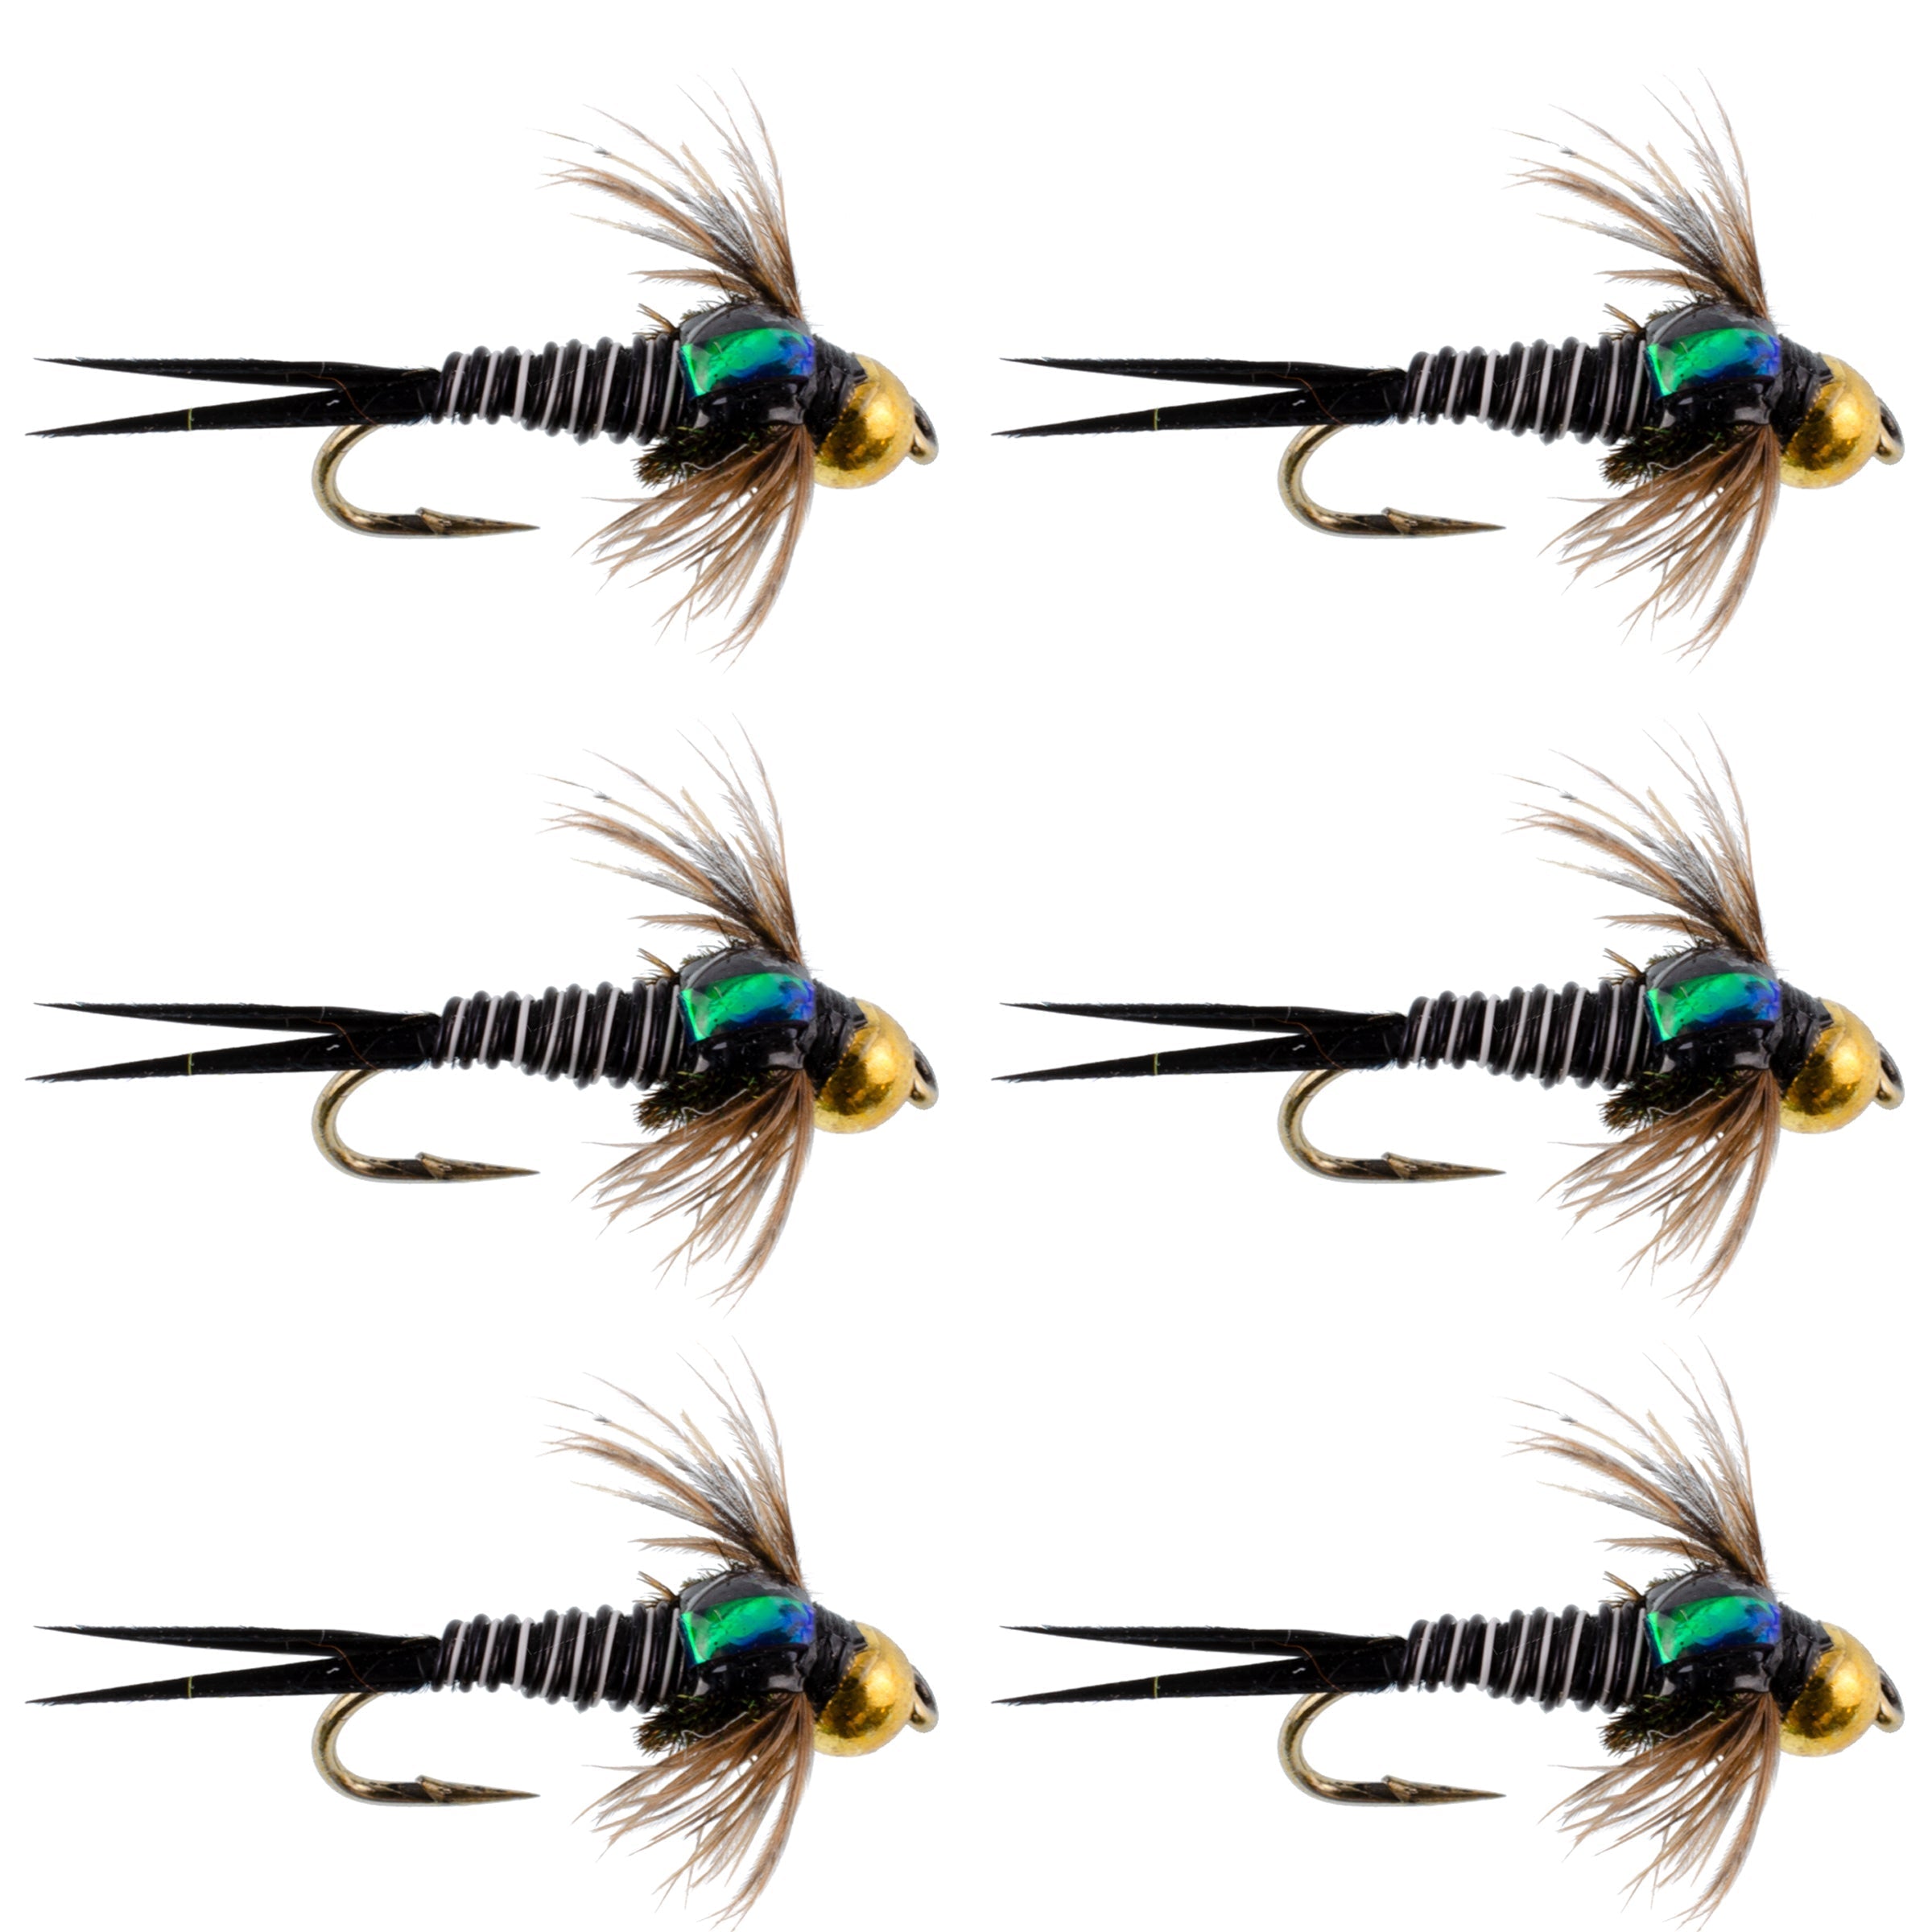 Bead Head Zebra Copper John Nymph Fly Fishing Flies - Set of 6 Flies Hook Size 16